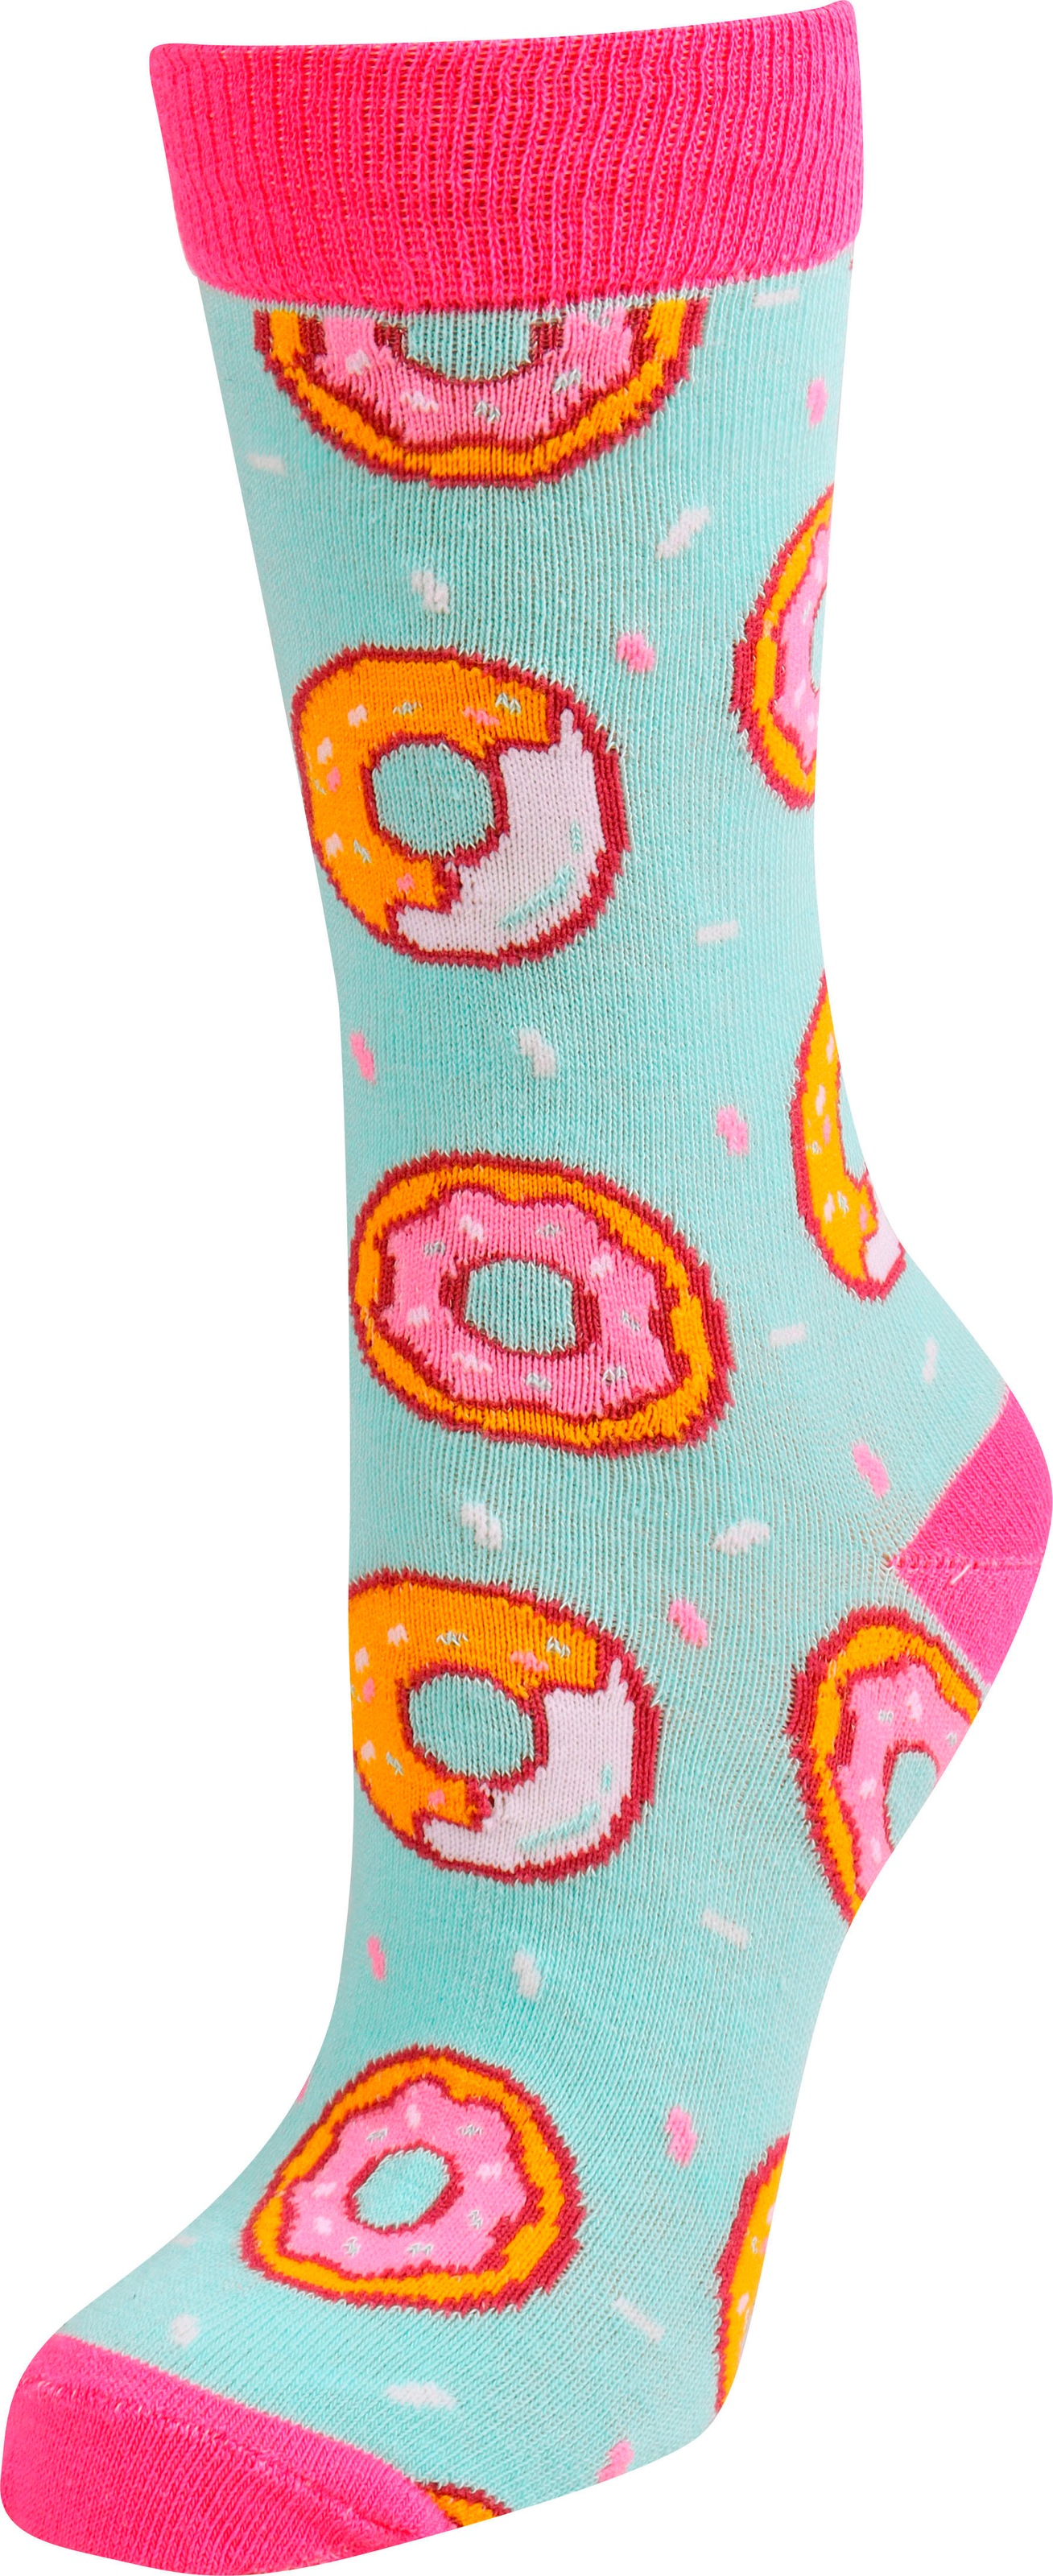 York New online OTTO Socken bei bestellen Capelli